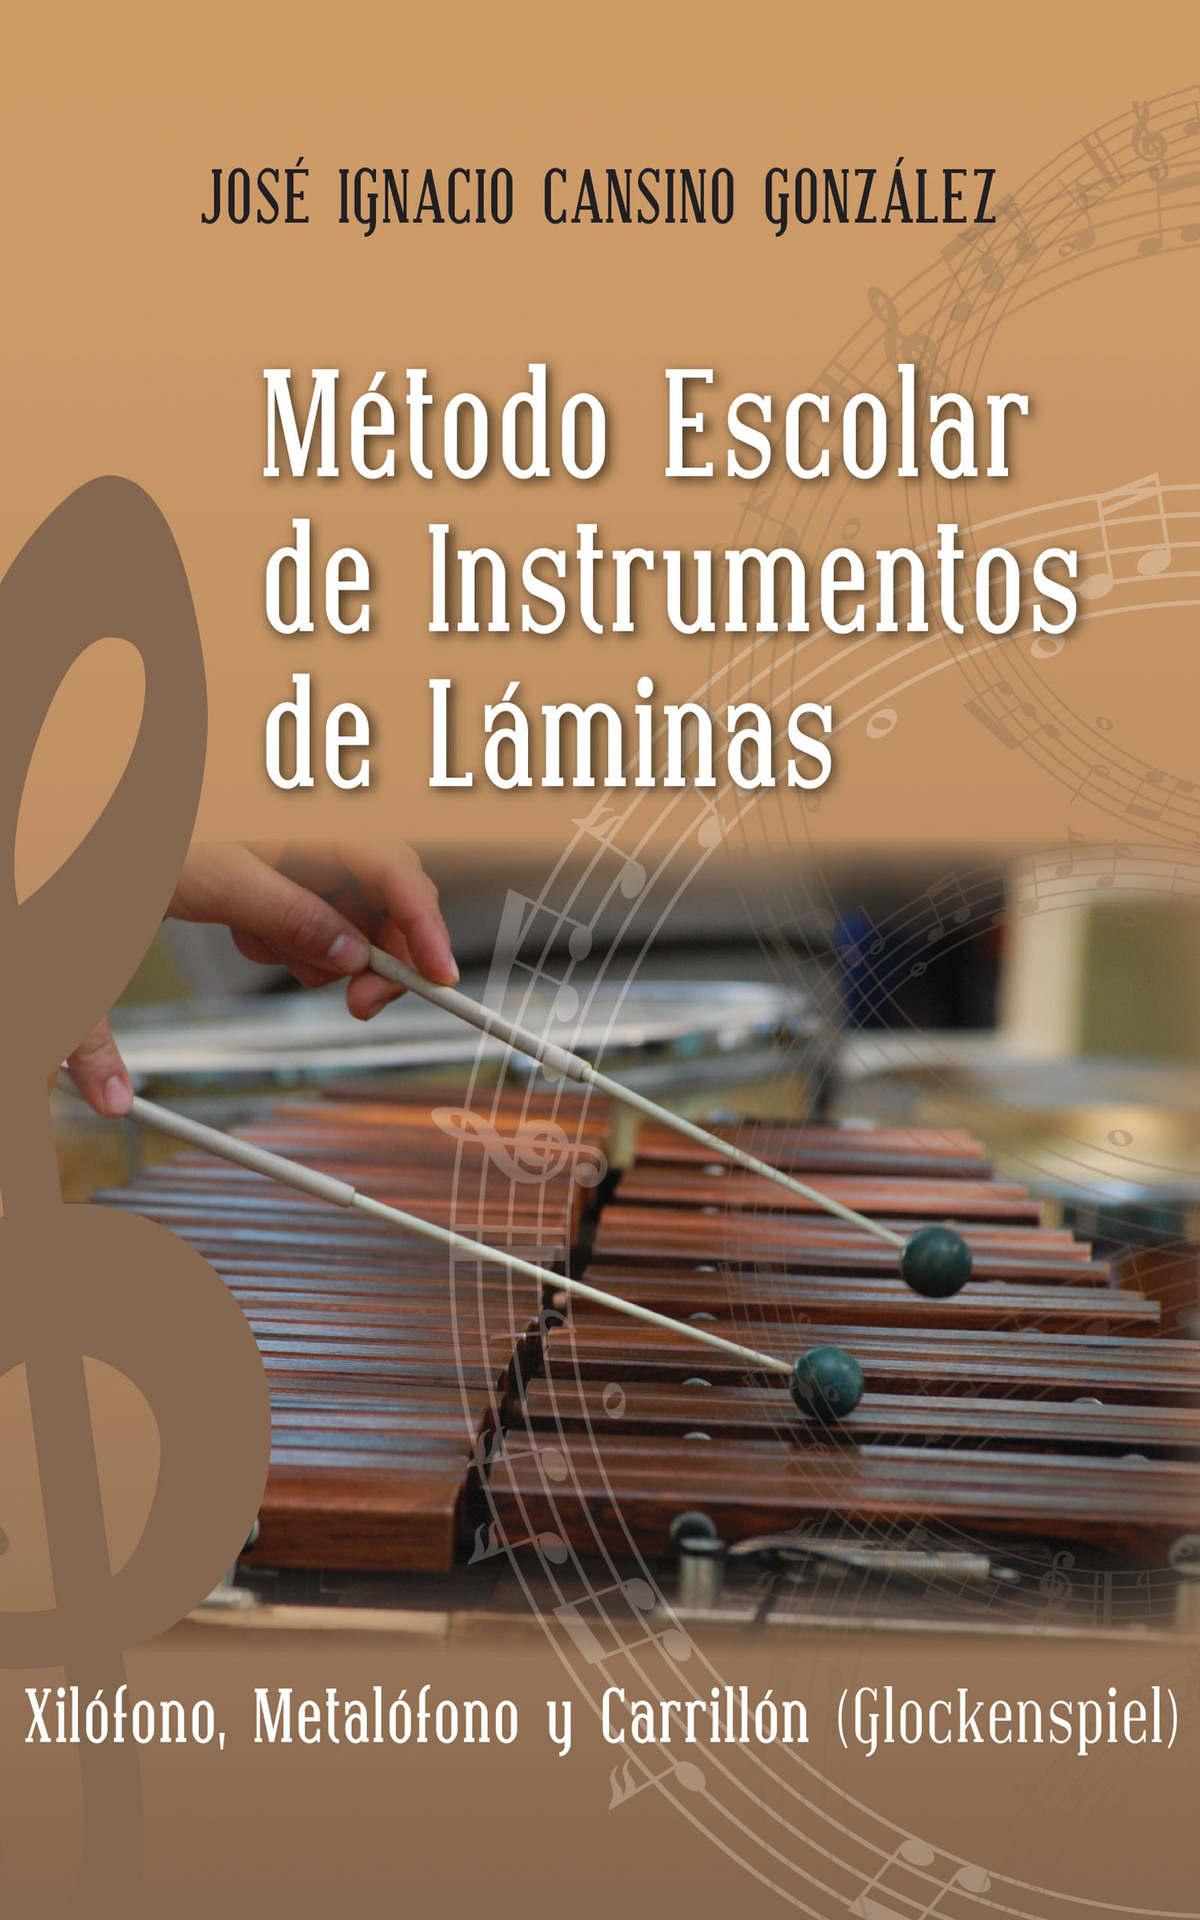 Imagen de portada del libro Método Escolar de Instrumentos de Láminas